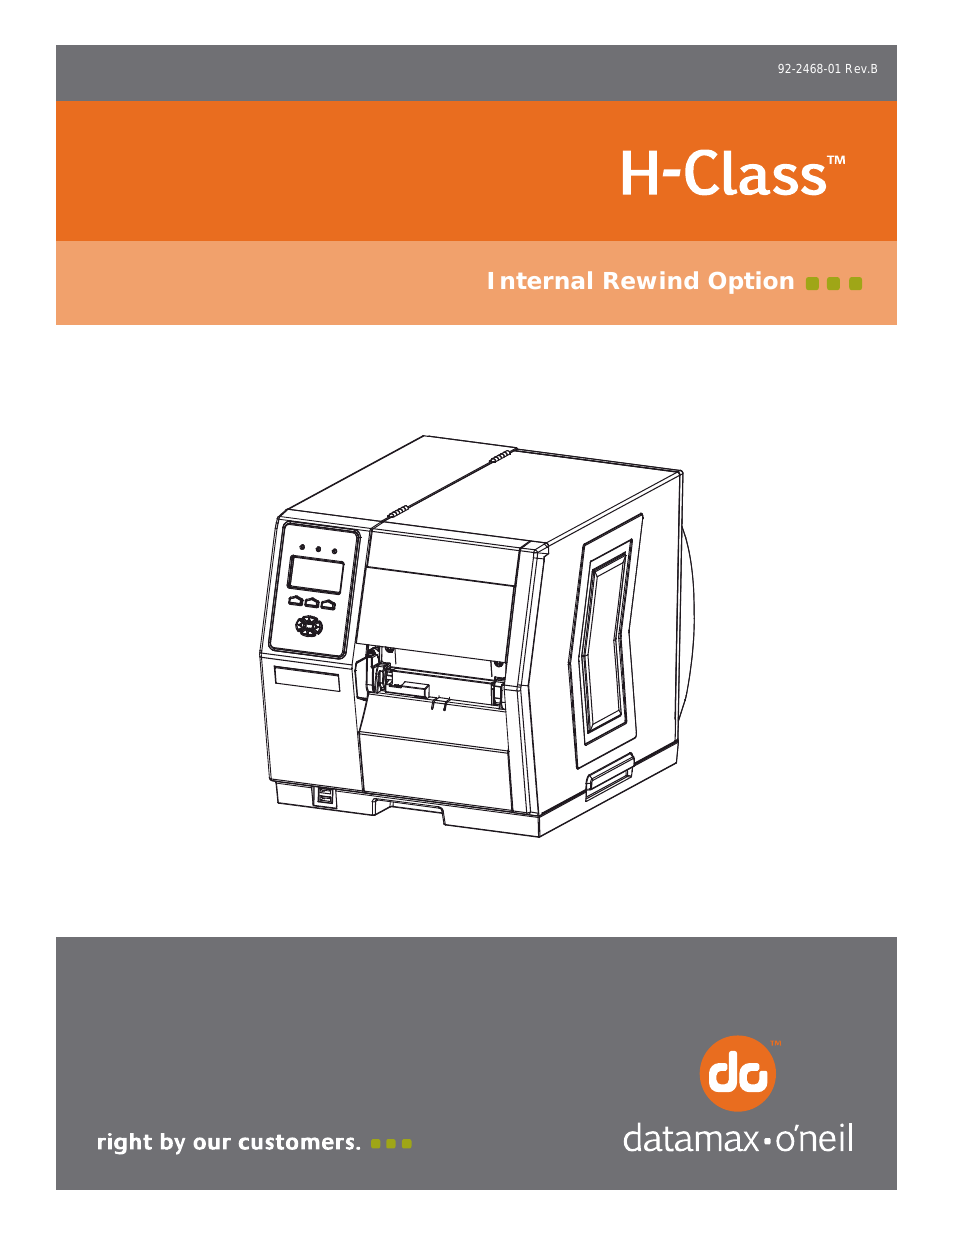 H-Class Internal Rewind Option